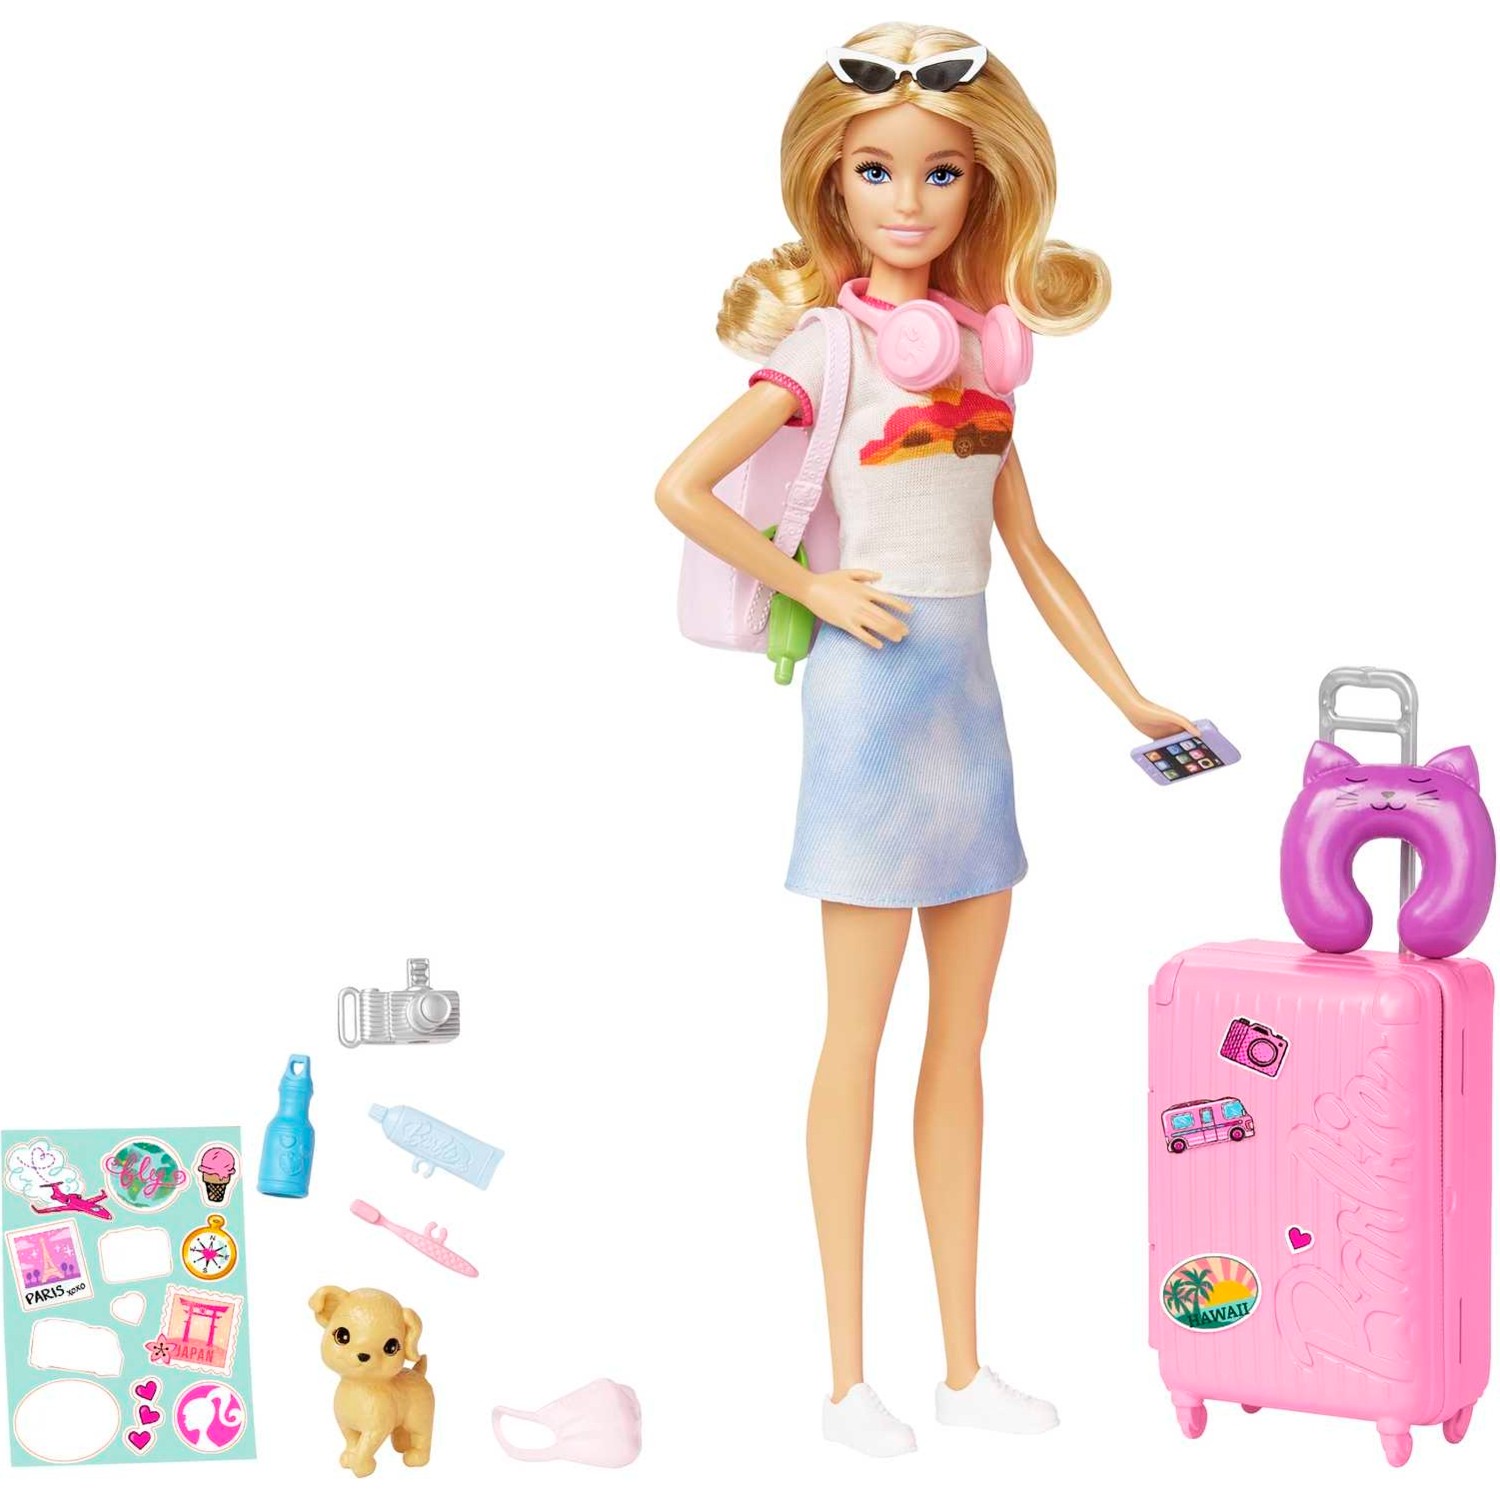 Кукла Barbie HJY18 набор barbie виртуальный мир автомобиль с мини куклой 10 см dtw18